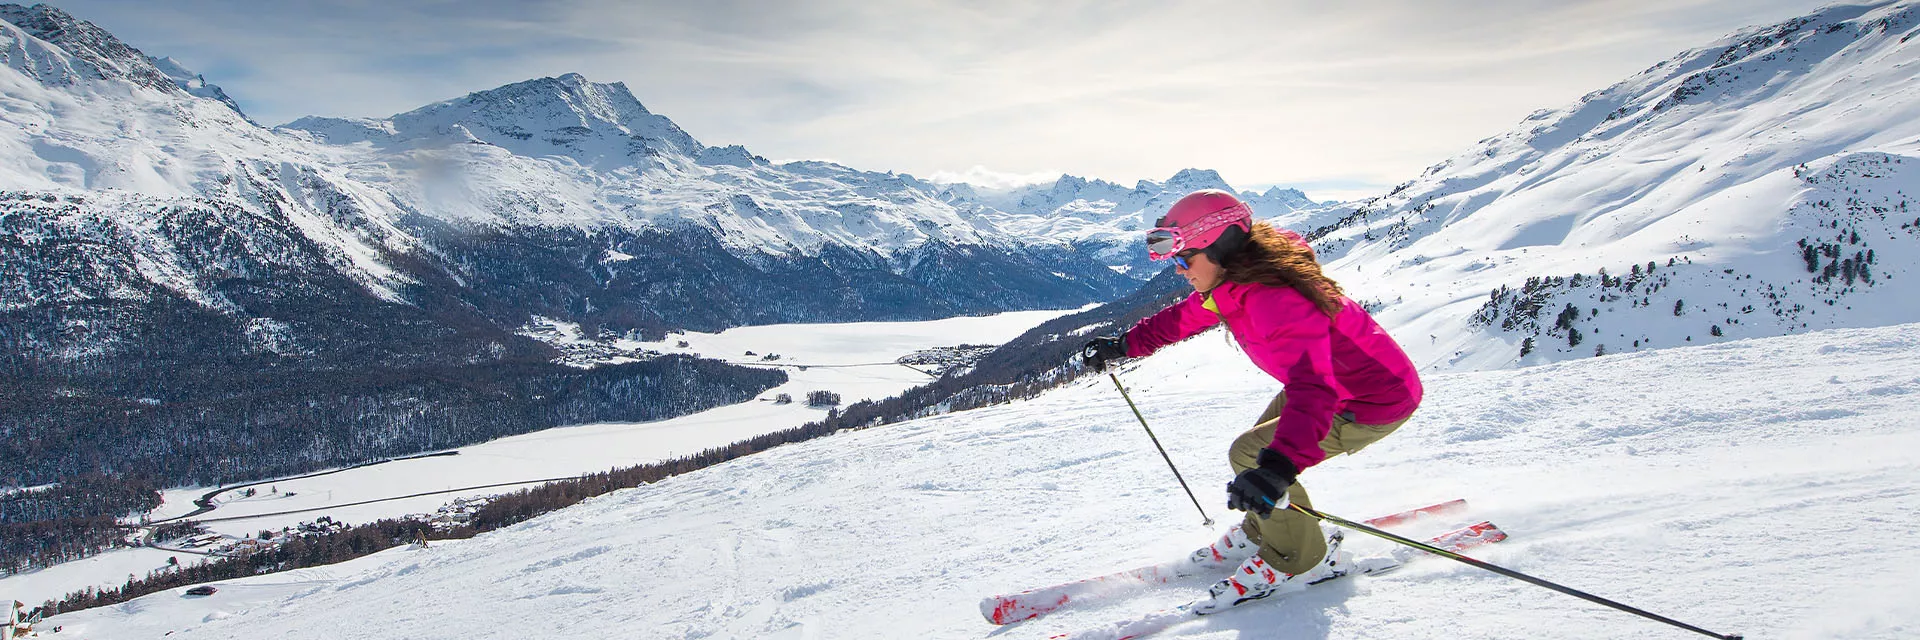 Un week-end ski tout confort en France avec Vacancéole